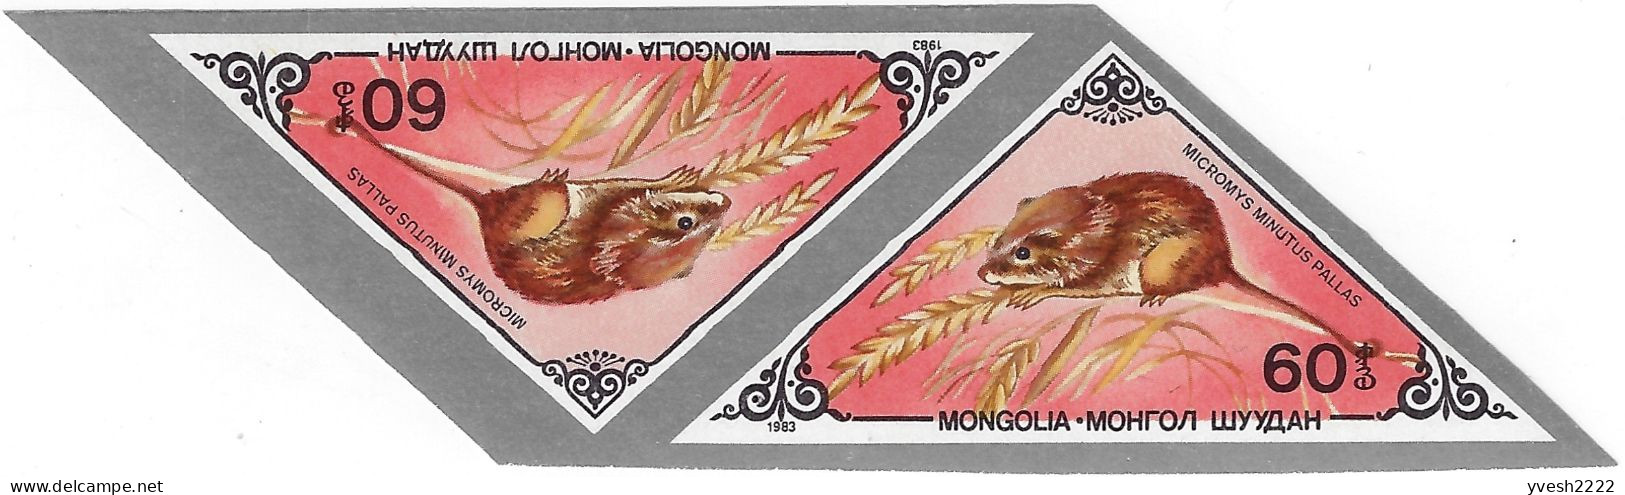 Mongolie 1983 Y&T 1271 à 1277 non dentelés en paires. Pika, gerboise, écureuil, souris, hérisson, musaraigne, tamia